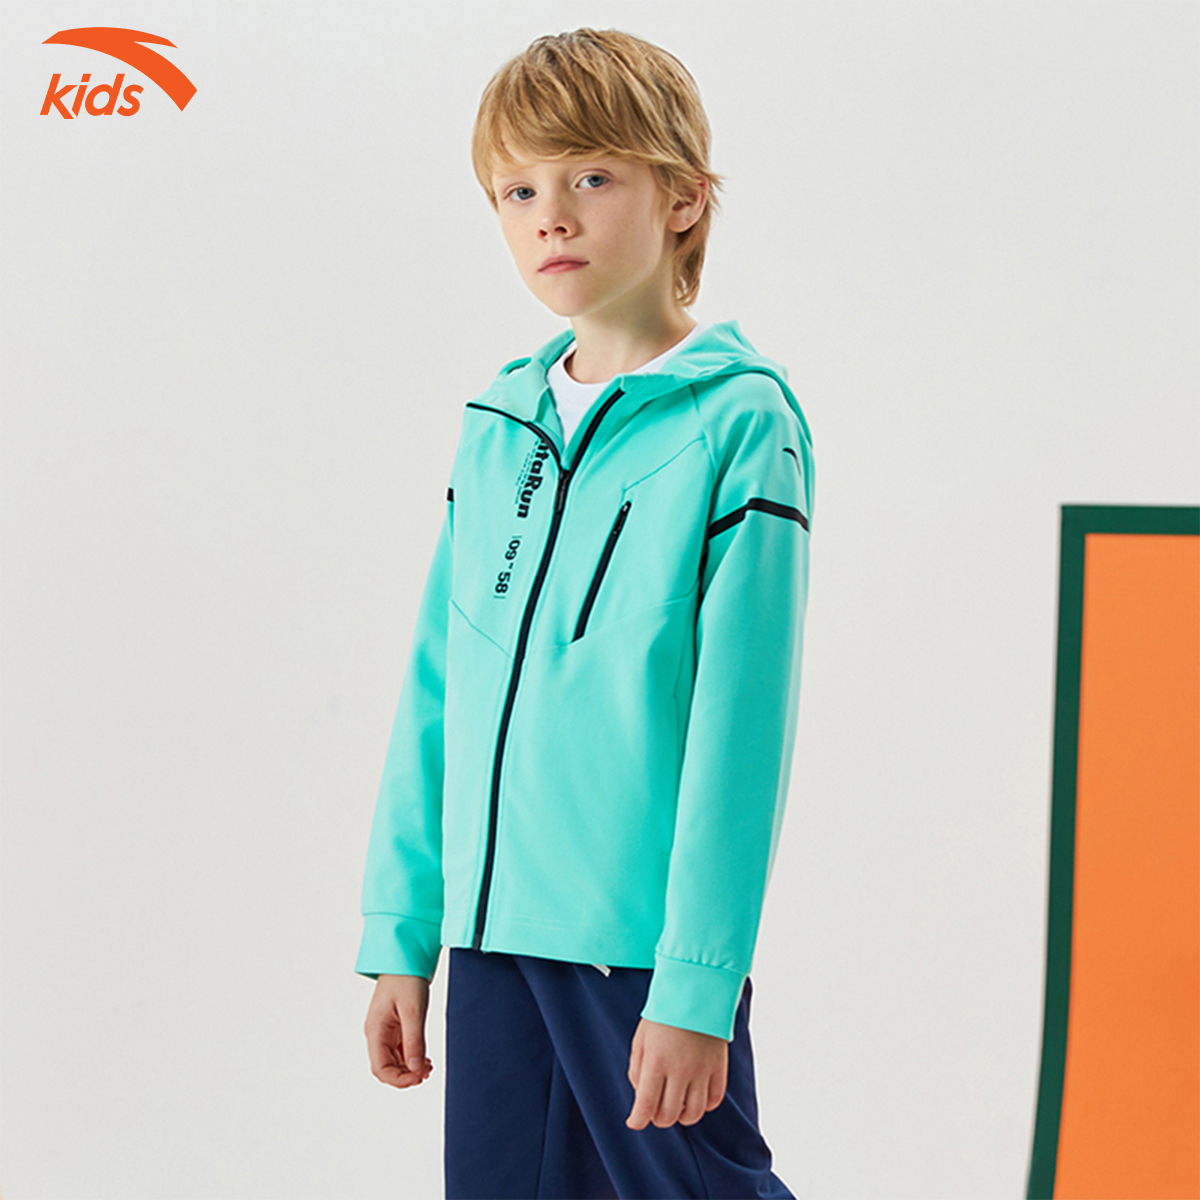 Áo khoác bé trai phối màu thời trang Anta Kids 352135707, chống nước, cản gió